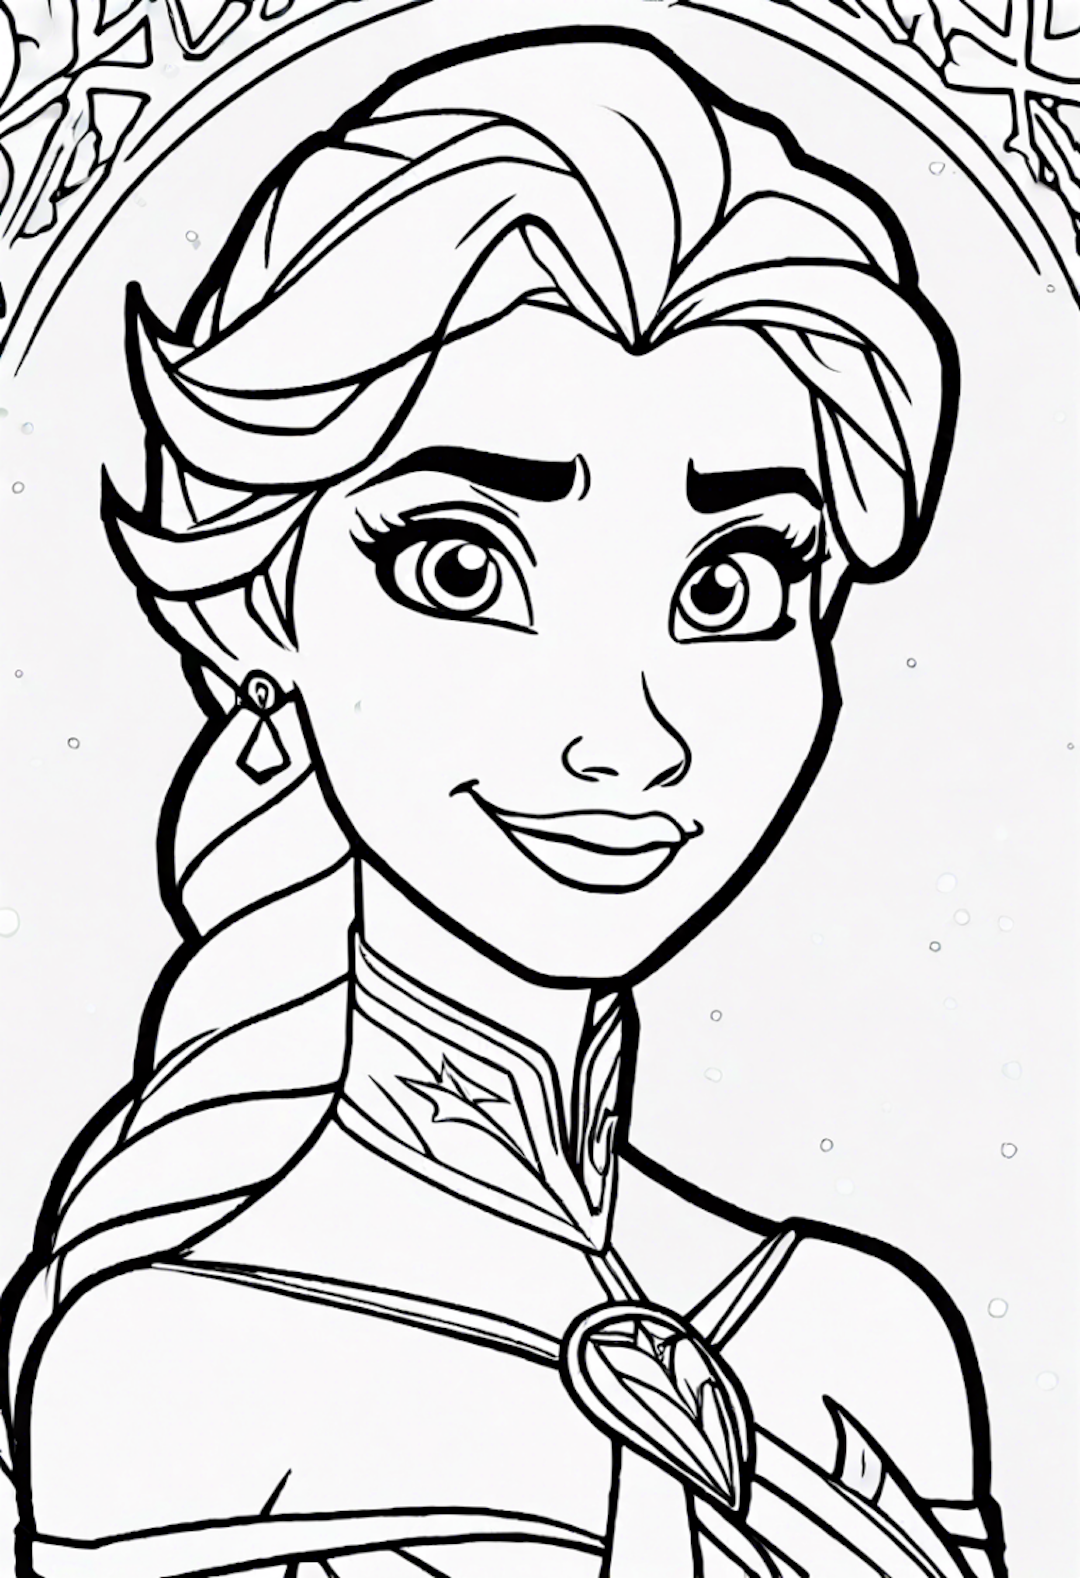 Elsa’s Royal Portrait Coloring Page coloring pages